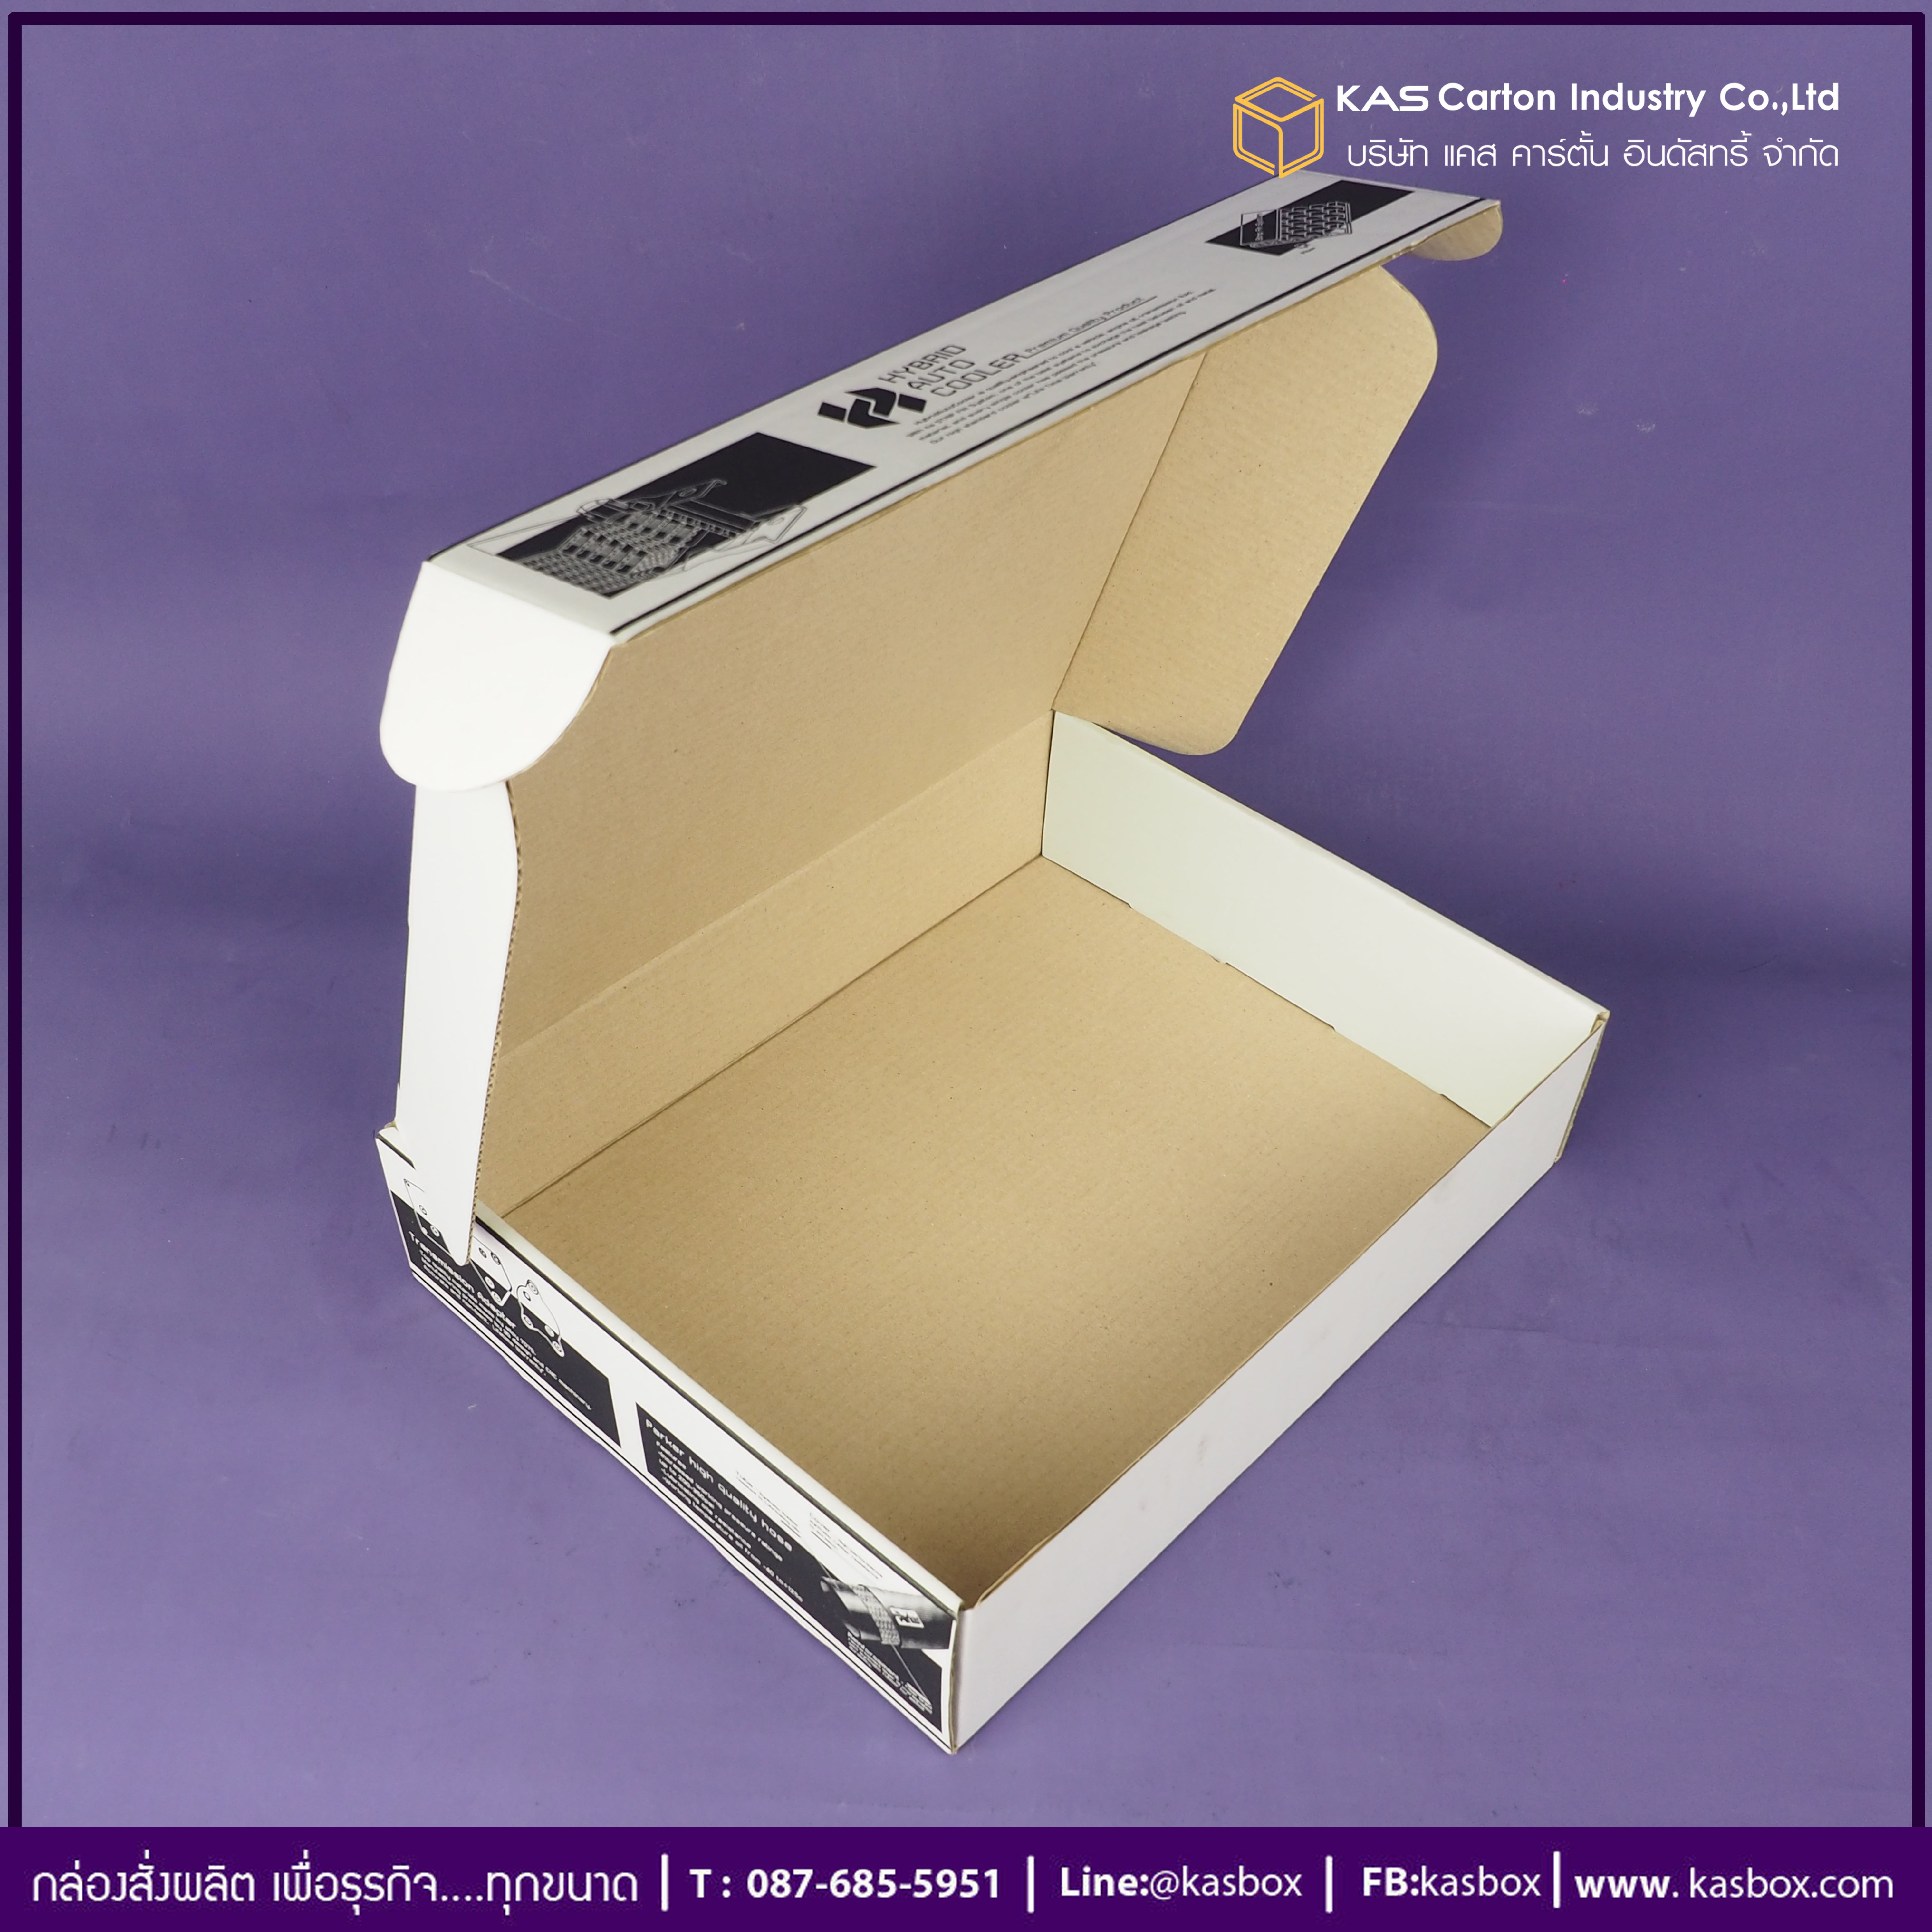 กล่องลูกฟูก สำเร็จรูป และ สั่งผลิต ตามความต้องการลูกค้า กล่องลูกฟูก SME กล่องกระดาษลูกฟูก Oil Cooler